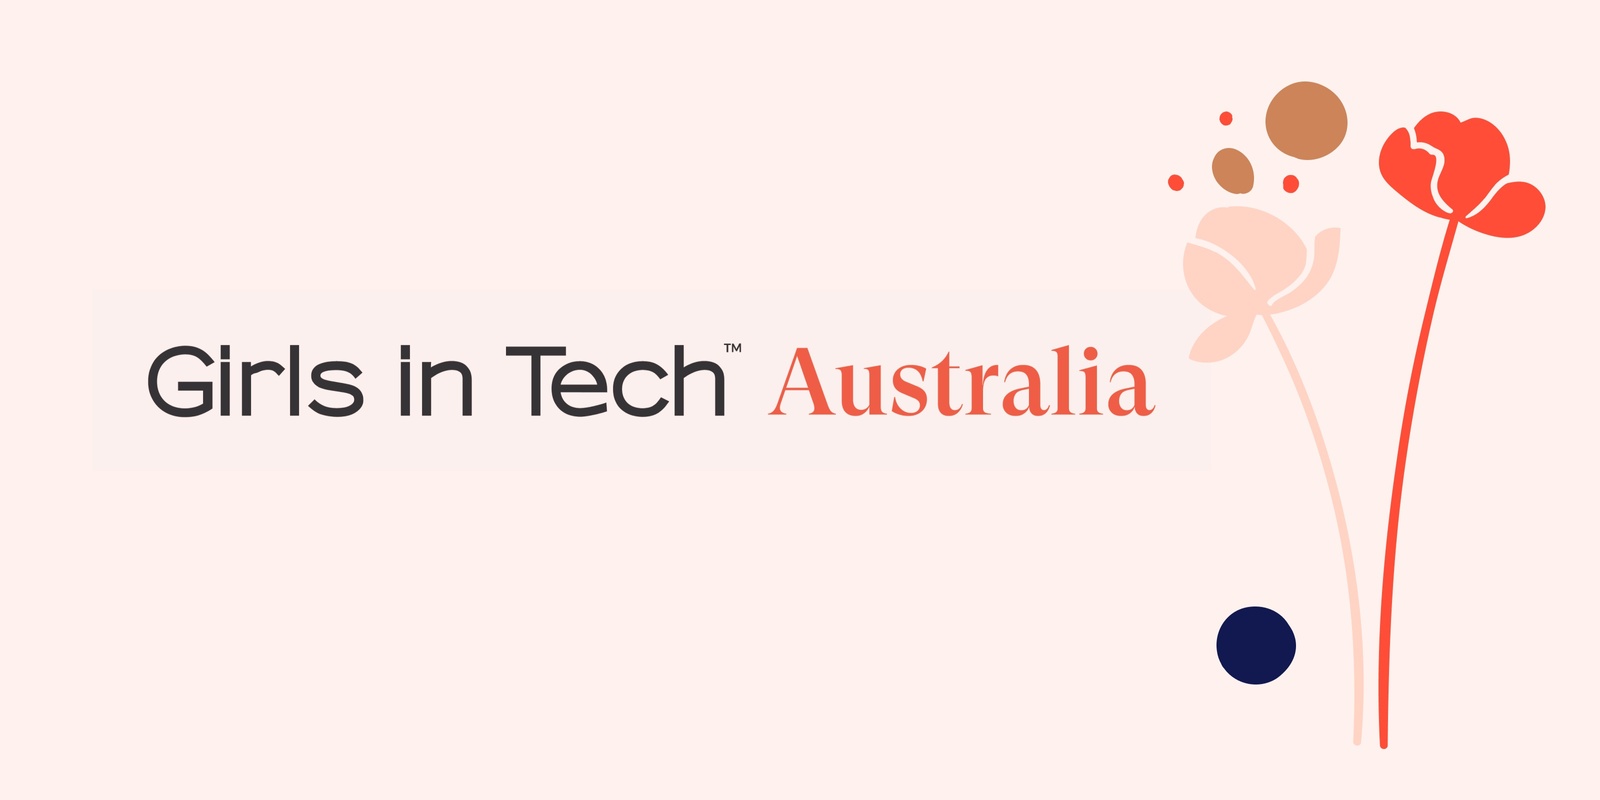 Girls in Tech Australia's banner